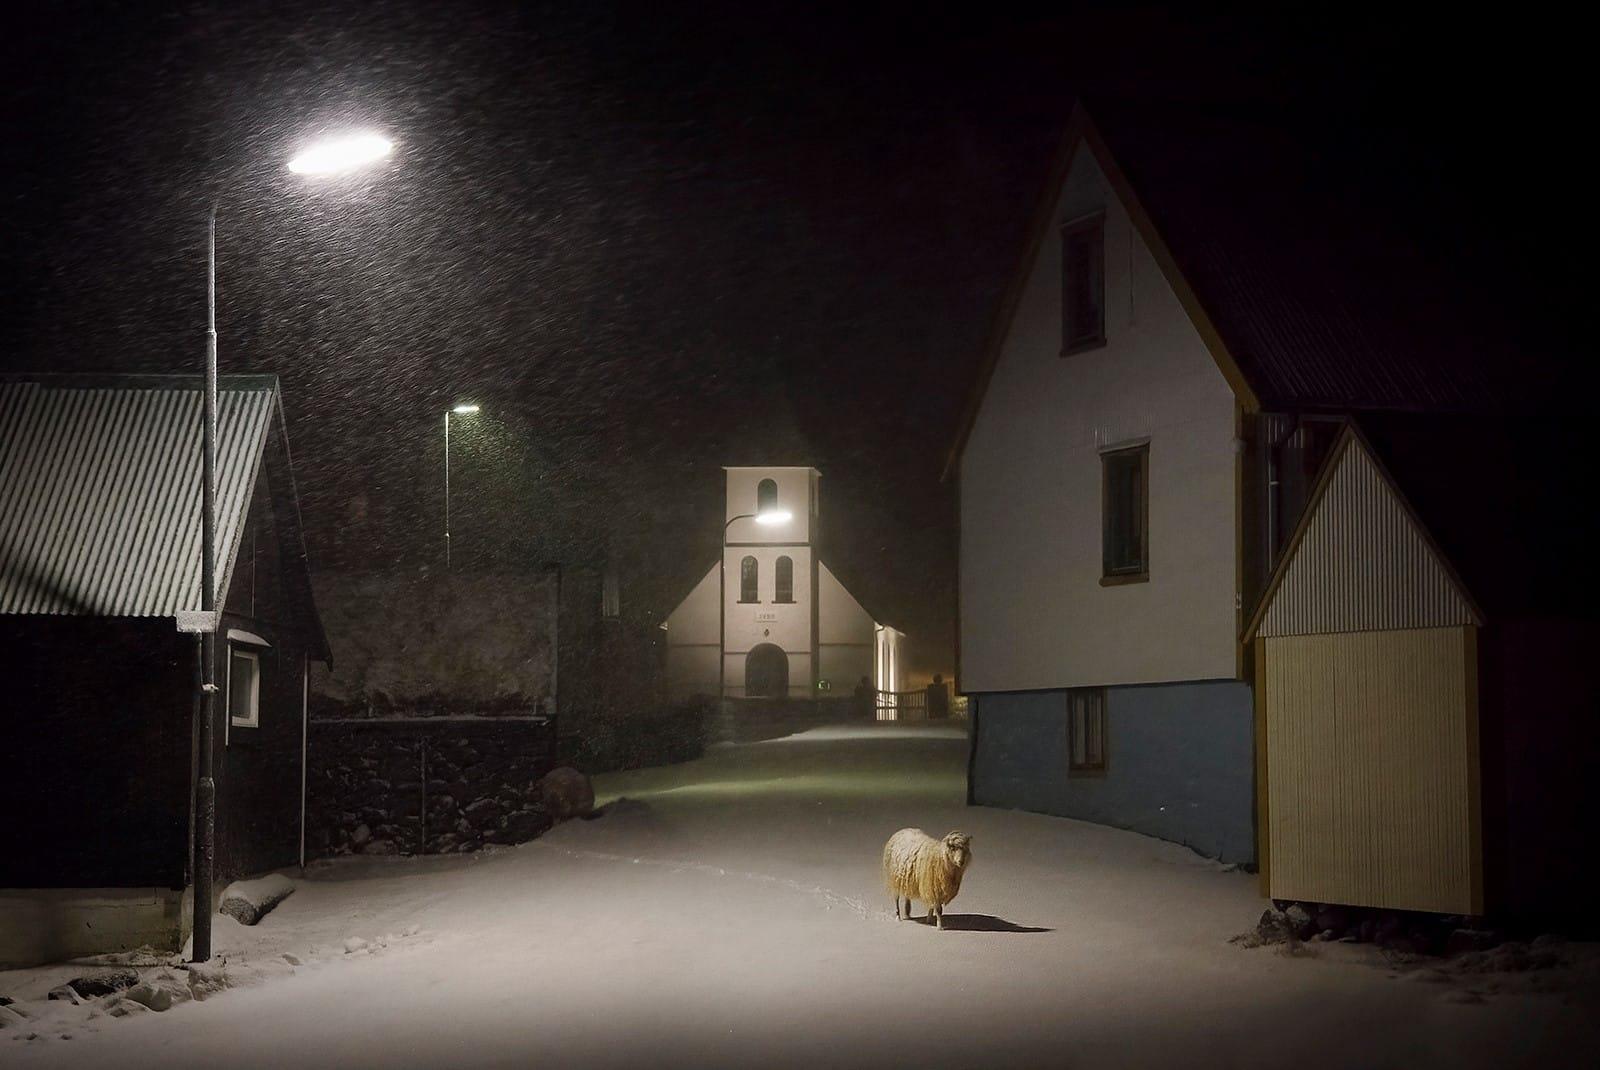 Das Schaf ist eine limitierte Auflage der Fotografie des zeitgenössischen Künstlers Christophe Jacrot. Sie ist Teil der Reihe "Turbulente Färöer Inseln".
 
Dieses Foto wird nur als ungerahmter Abzug verkauft. Sie ist nur in einer Dimension